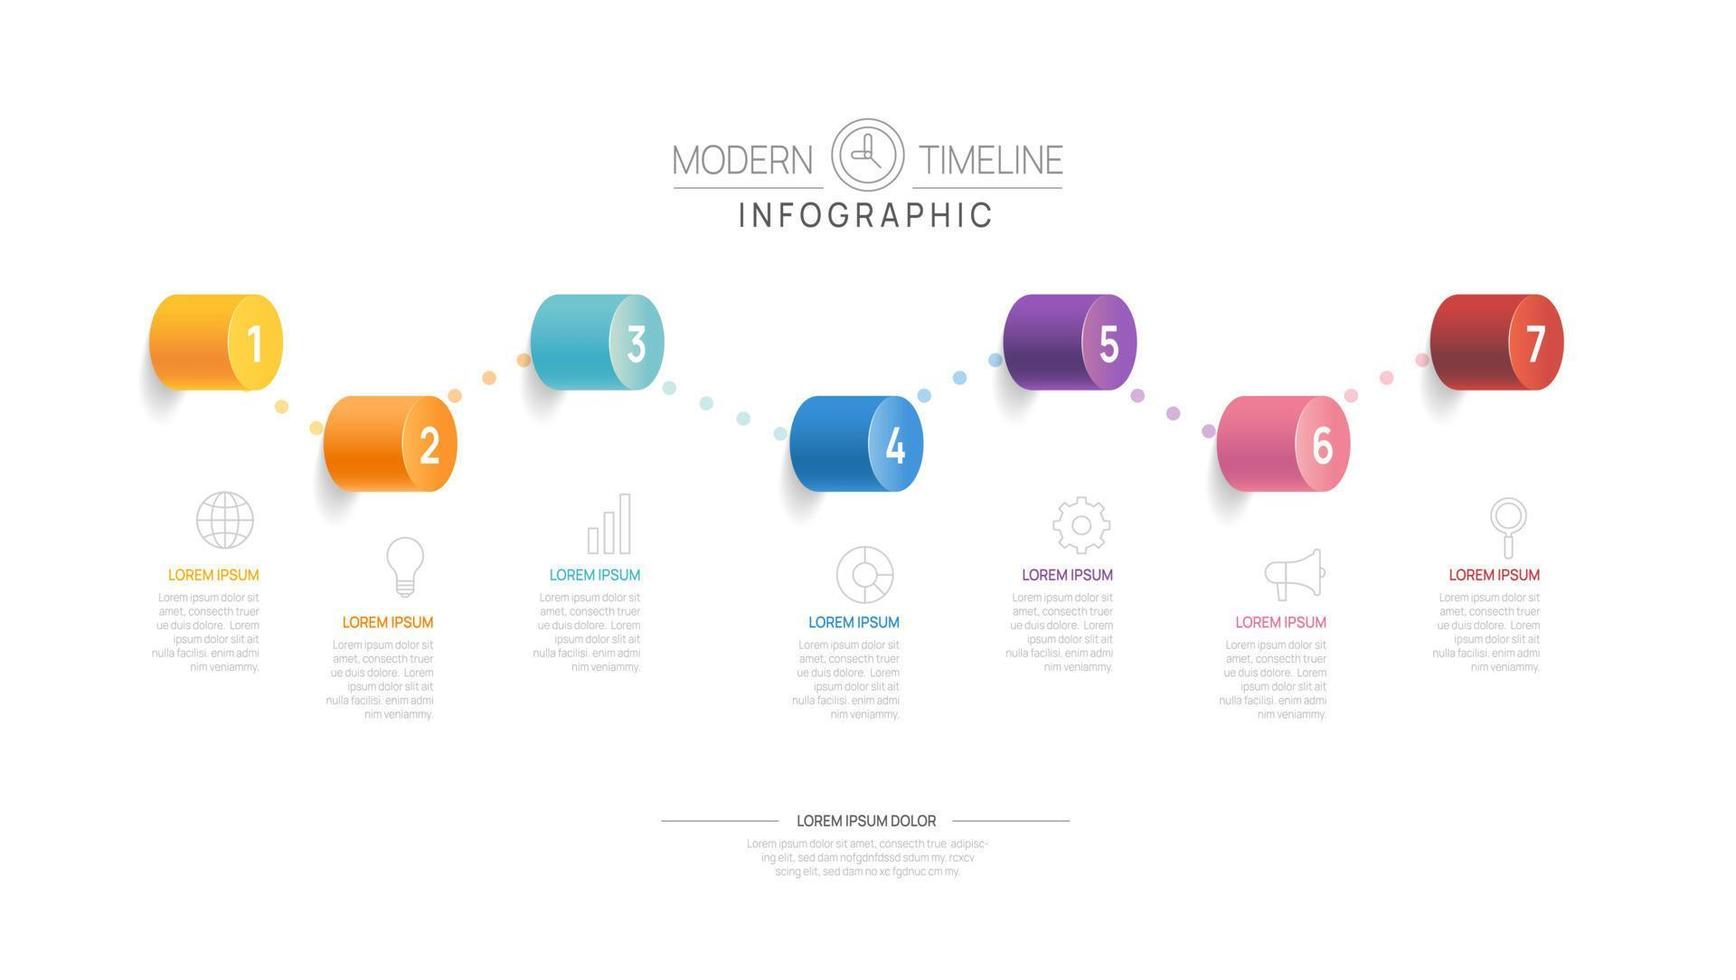 modèle de diagramme de chronologie infographique pour les entreprises. Feuille de route moderne en 7 étapes avec des sujets de cercle, pour les infographies vectorielles, les organigrammes, les présentations. vecteur